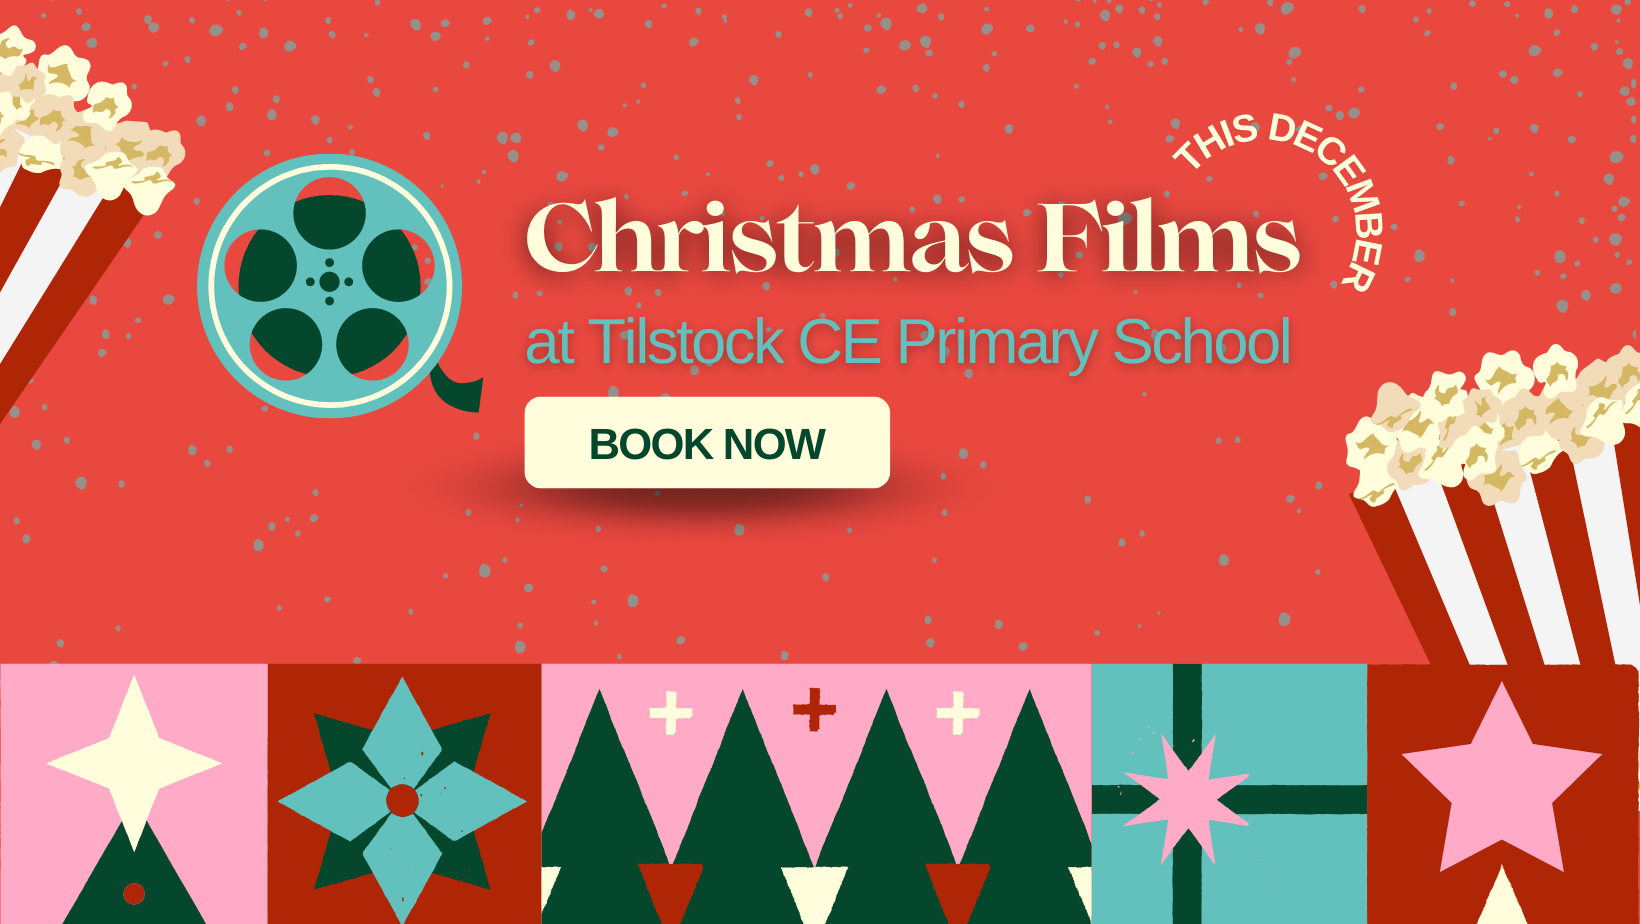 TILSTOCK SCHOOL Christmas Film Showings